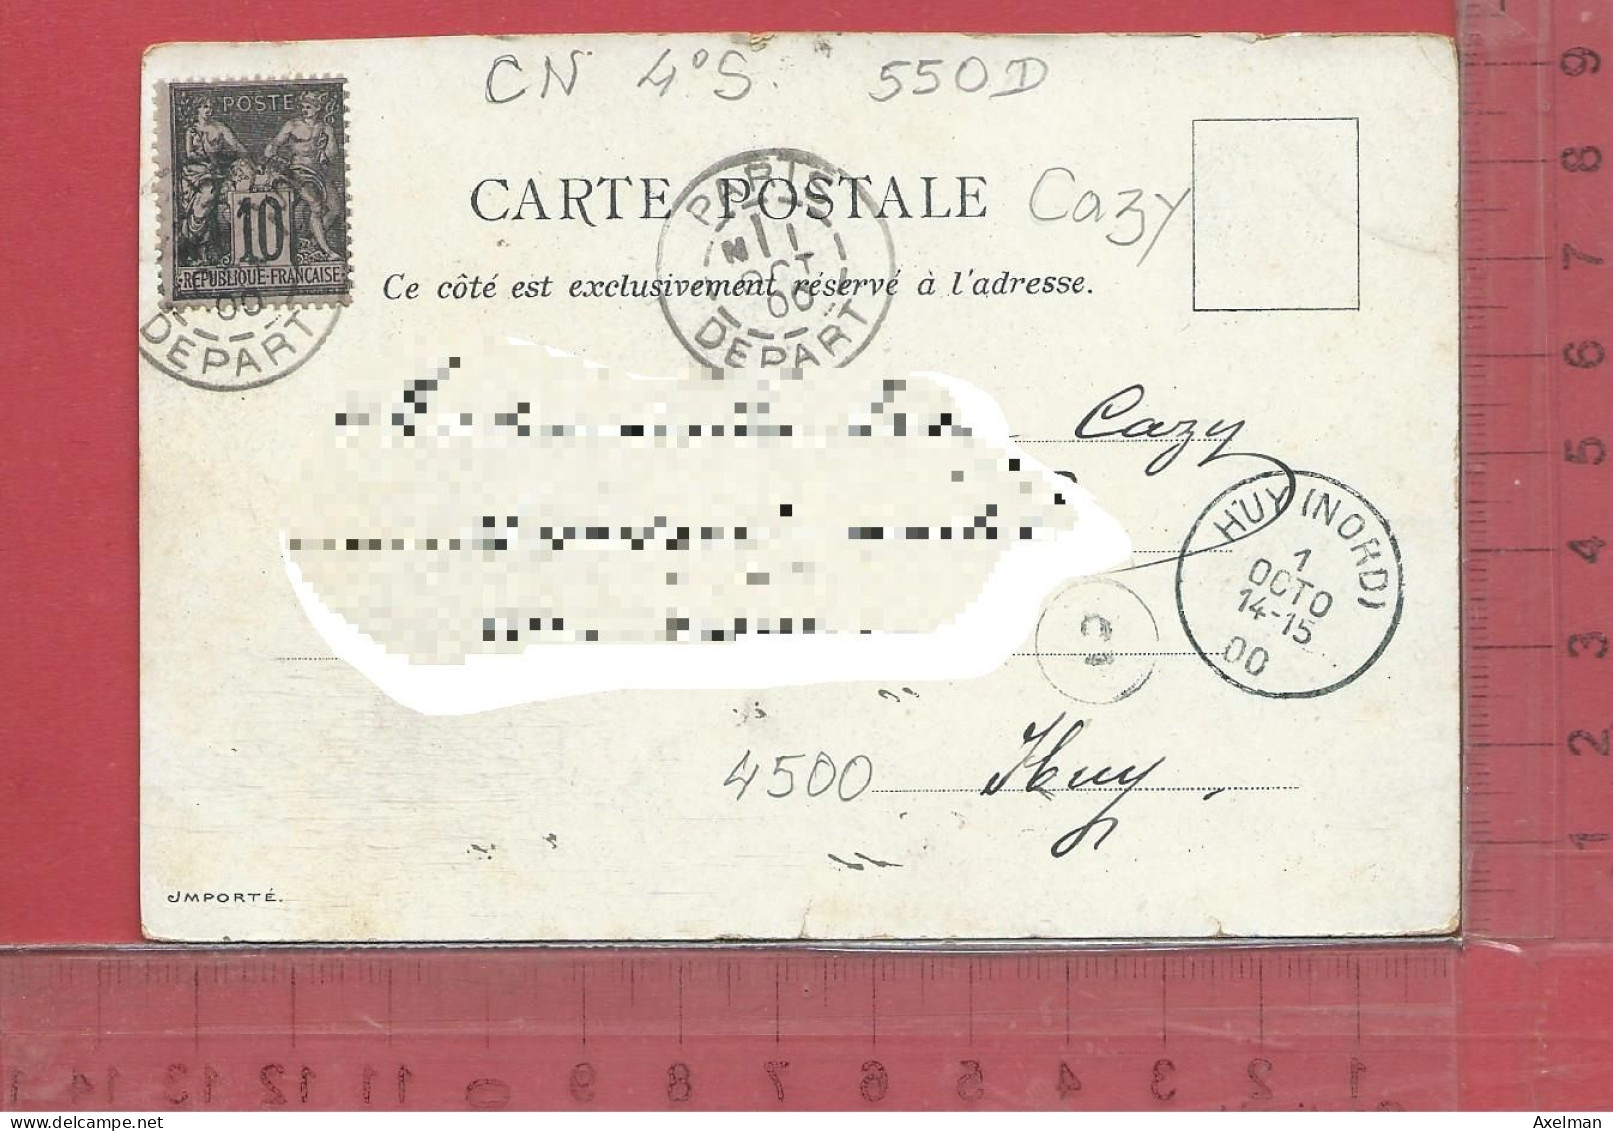 CARTE NOMINATIVE :  CAZY ( Chemiserie )  à  4500  Huy  Belgique - Genealogy